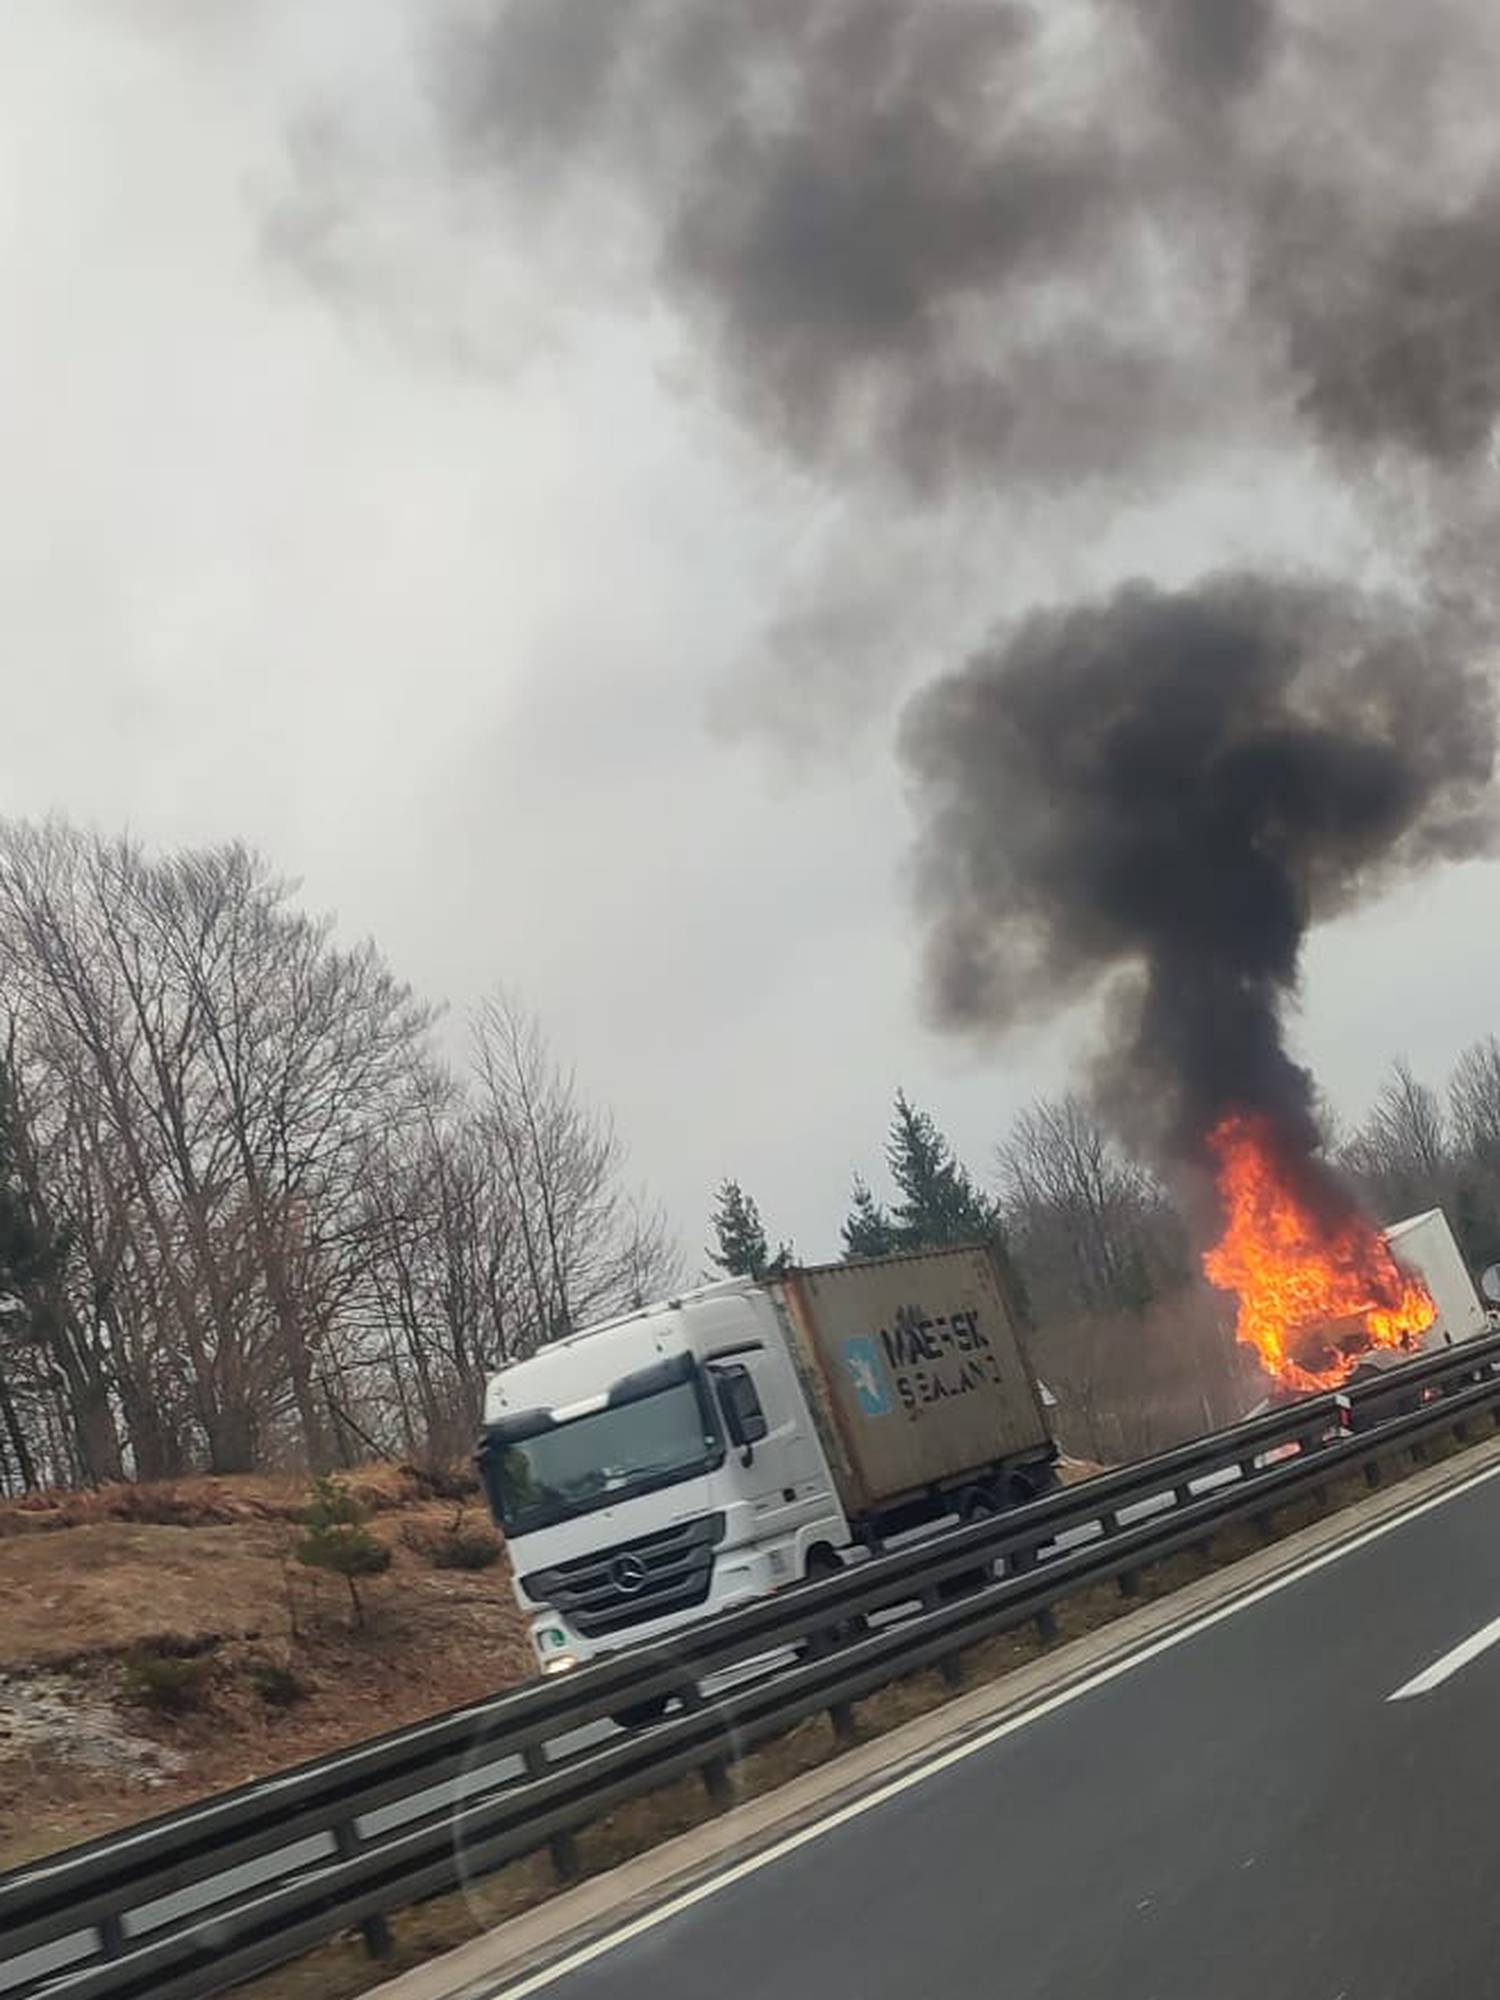 VIDEO Detalji buktinje na A6: 'Hladnjača se zabila u kamion. Vatrogasci su izvlačili vozača'